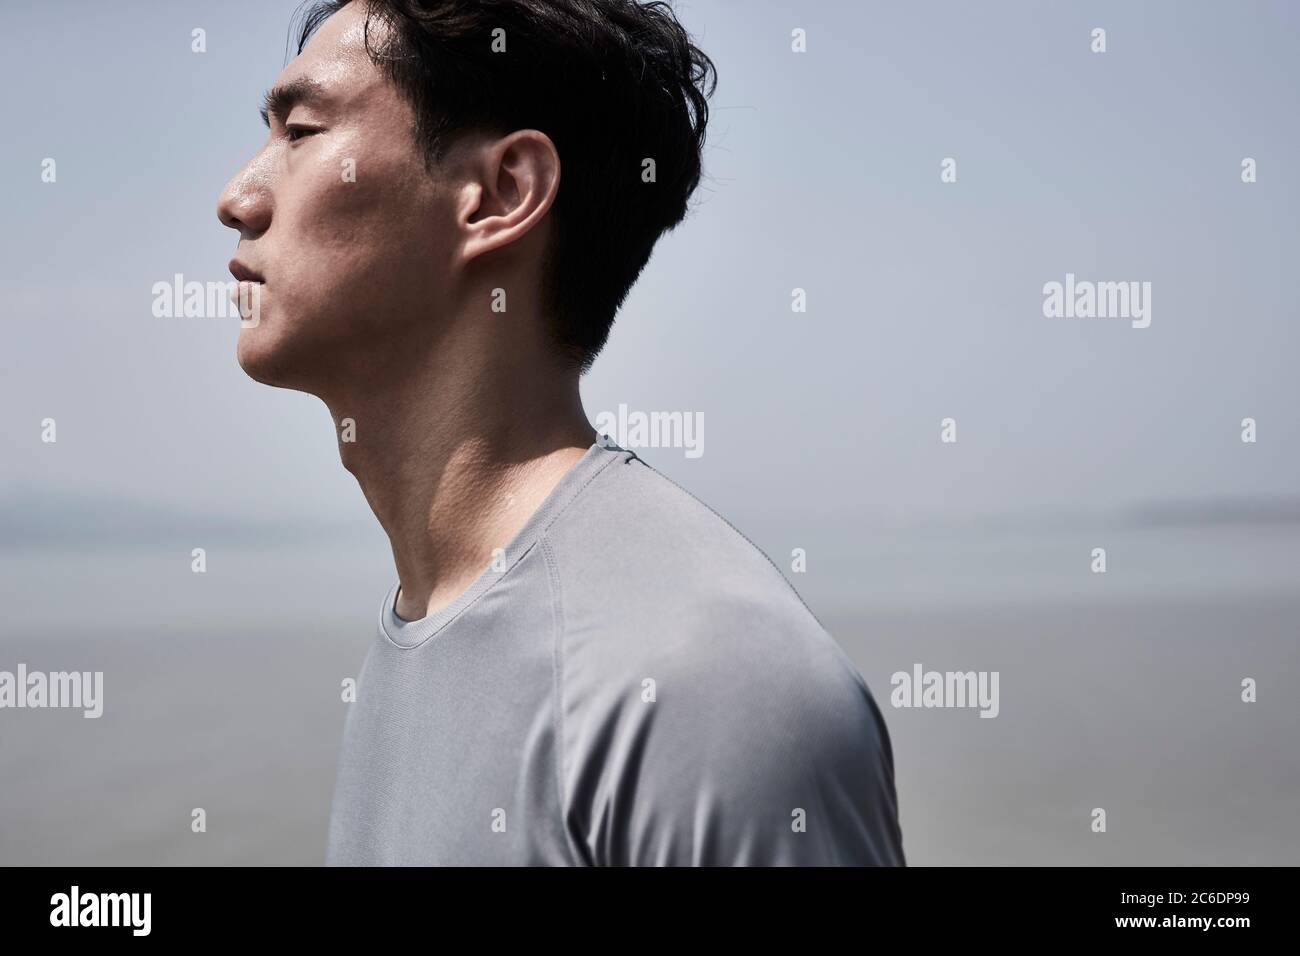 retrato al aire libre de un joven asiático de pie junto al mar, vista lateral Foto de stock